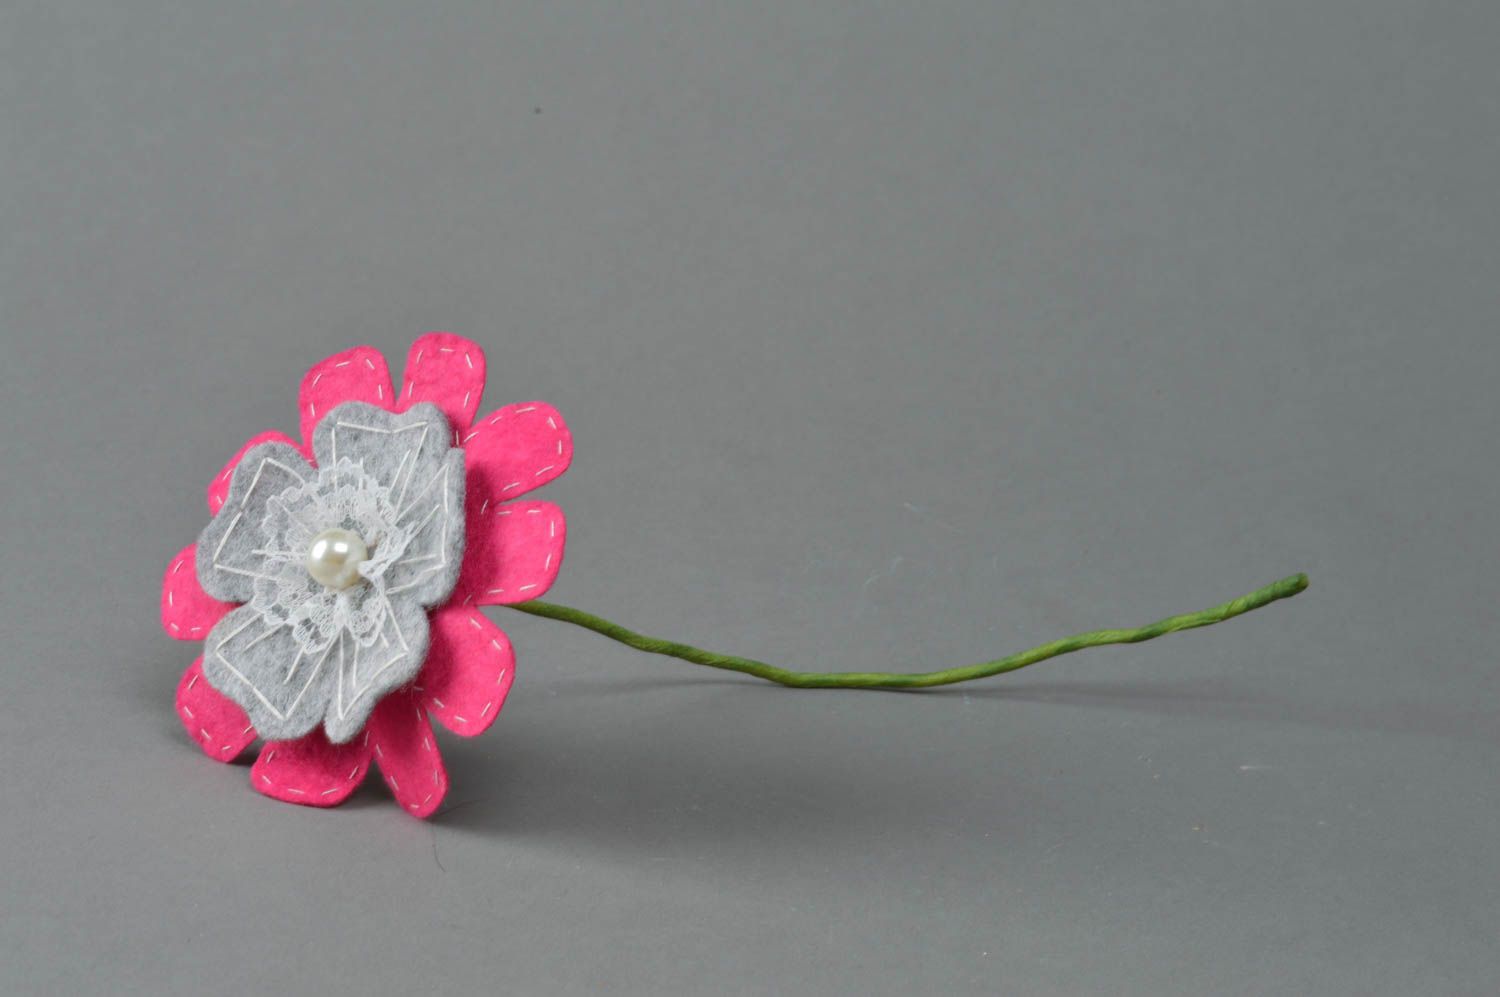 Декоративный цветок из фетра игрушка для ребенка или декора ручной работы фото 1